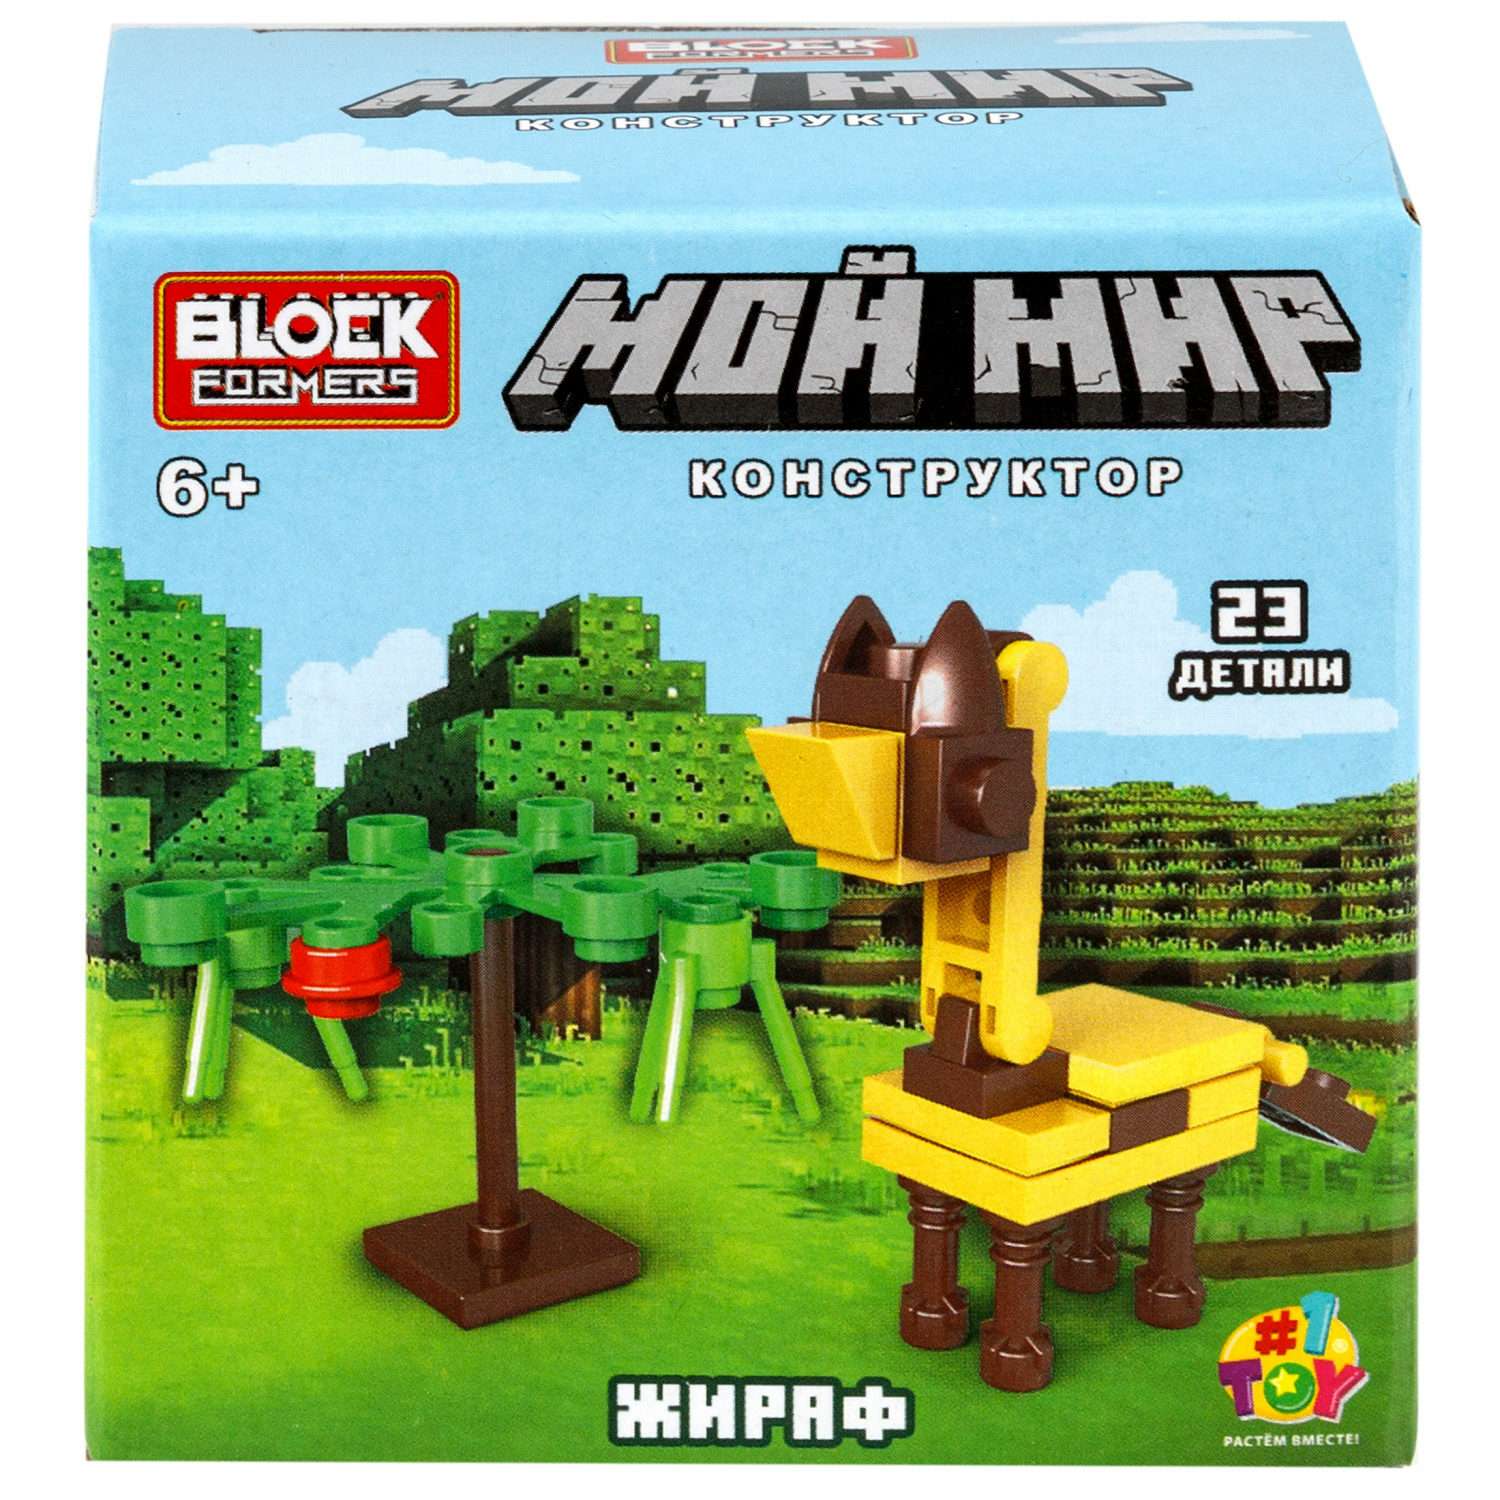 Игрушка-сюрприз 1TOY Blockformers Мой мир 3D конструктор из миниблоков - фото 23